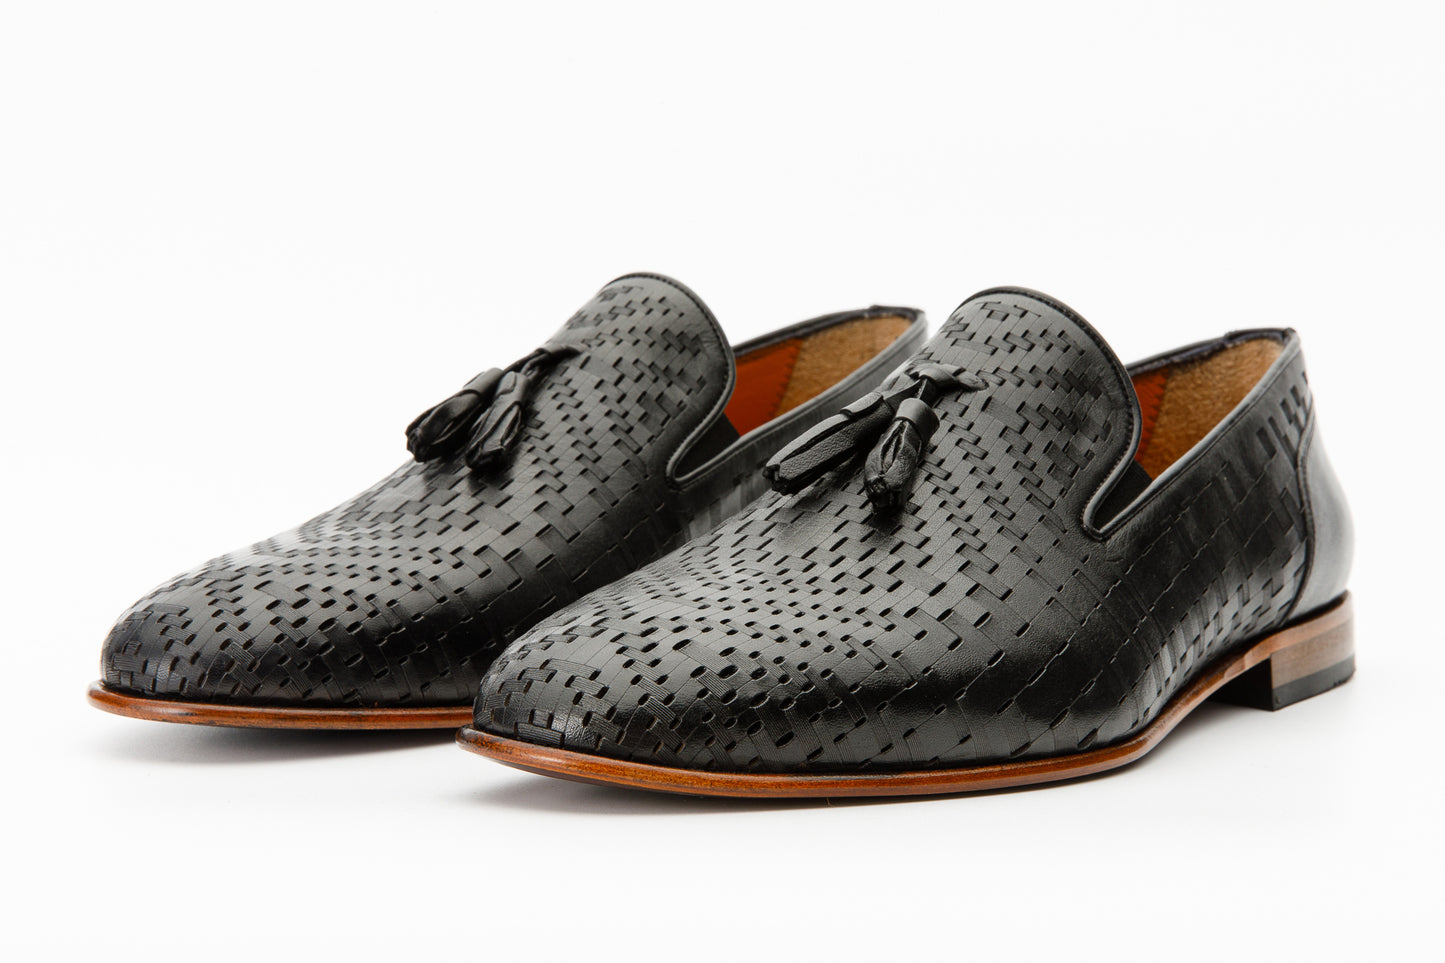 The Meram Black Leather Tassel Slip-On Loafer Men Shoe